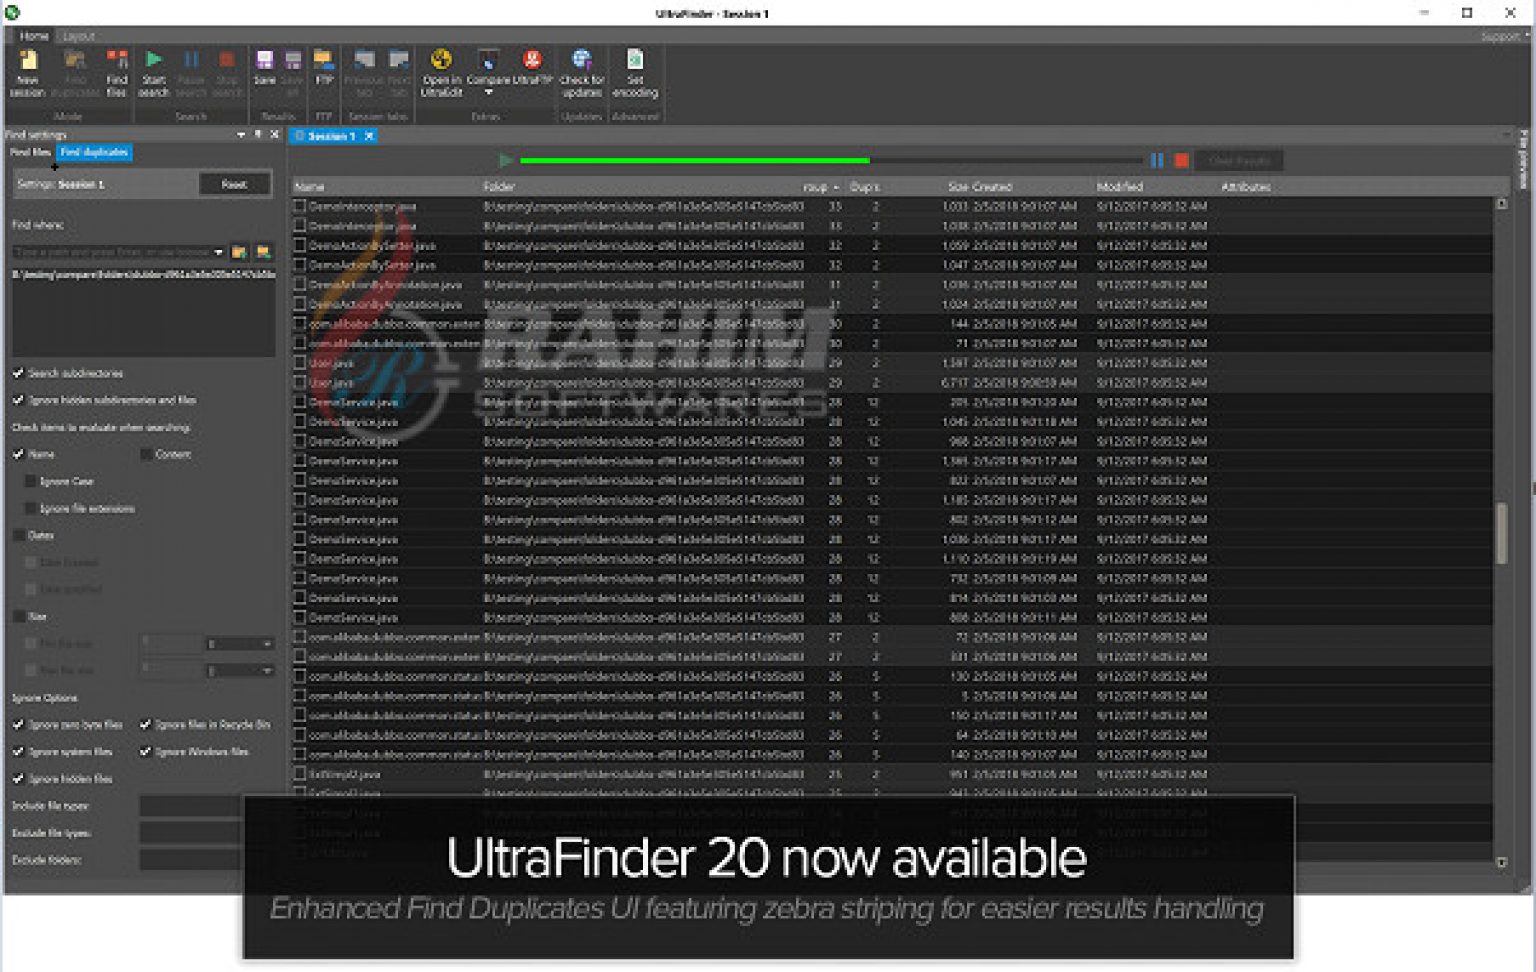 IDM UltraFinder 22.0.0.48 downloading